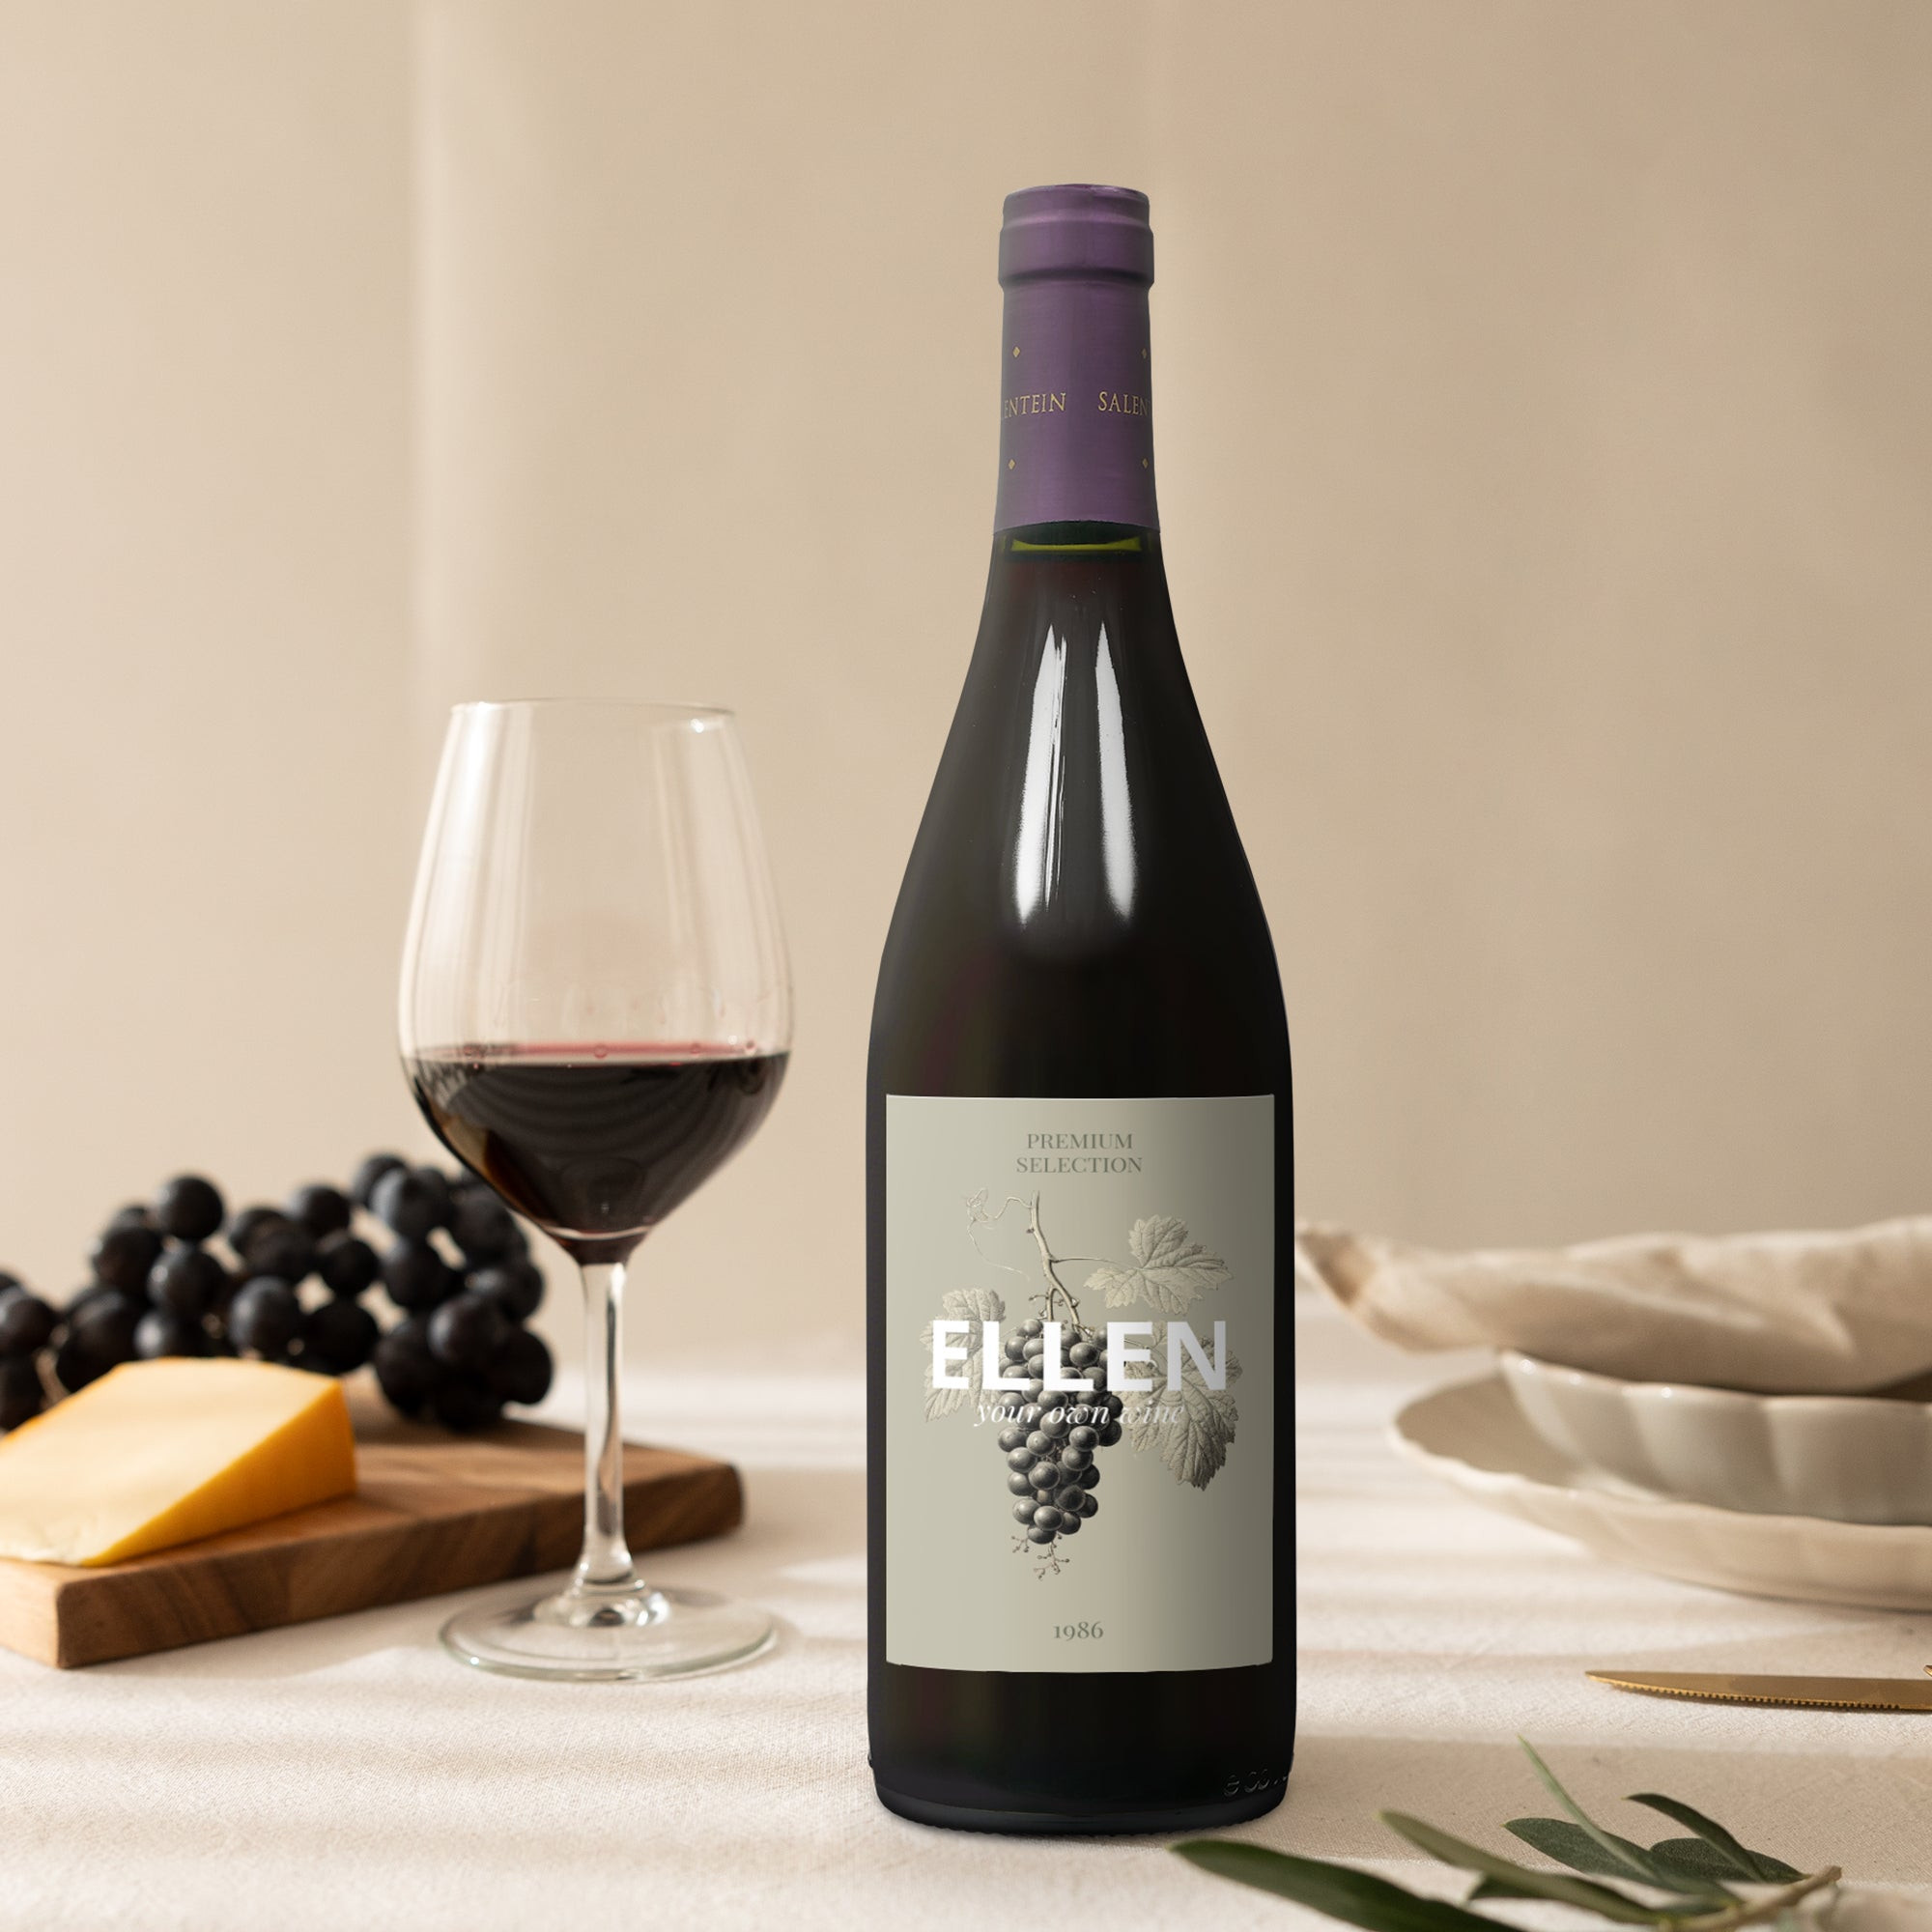 Wijn met bedrukt etiket - Salentein - Pinot Noir